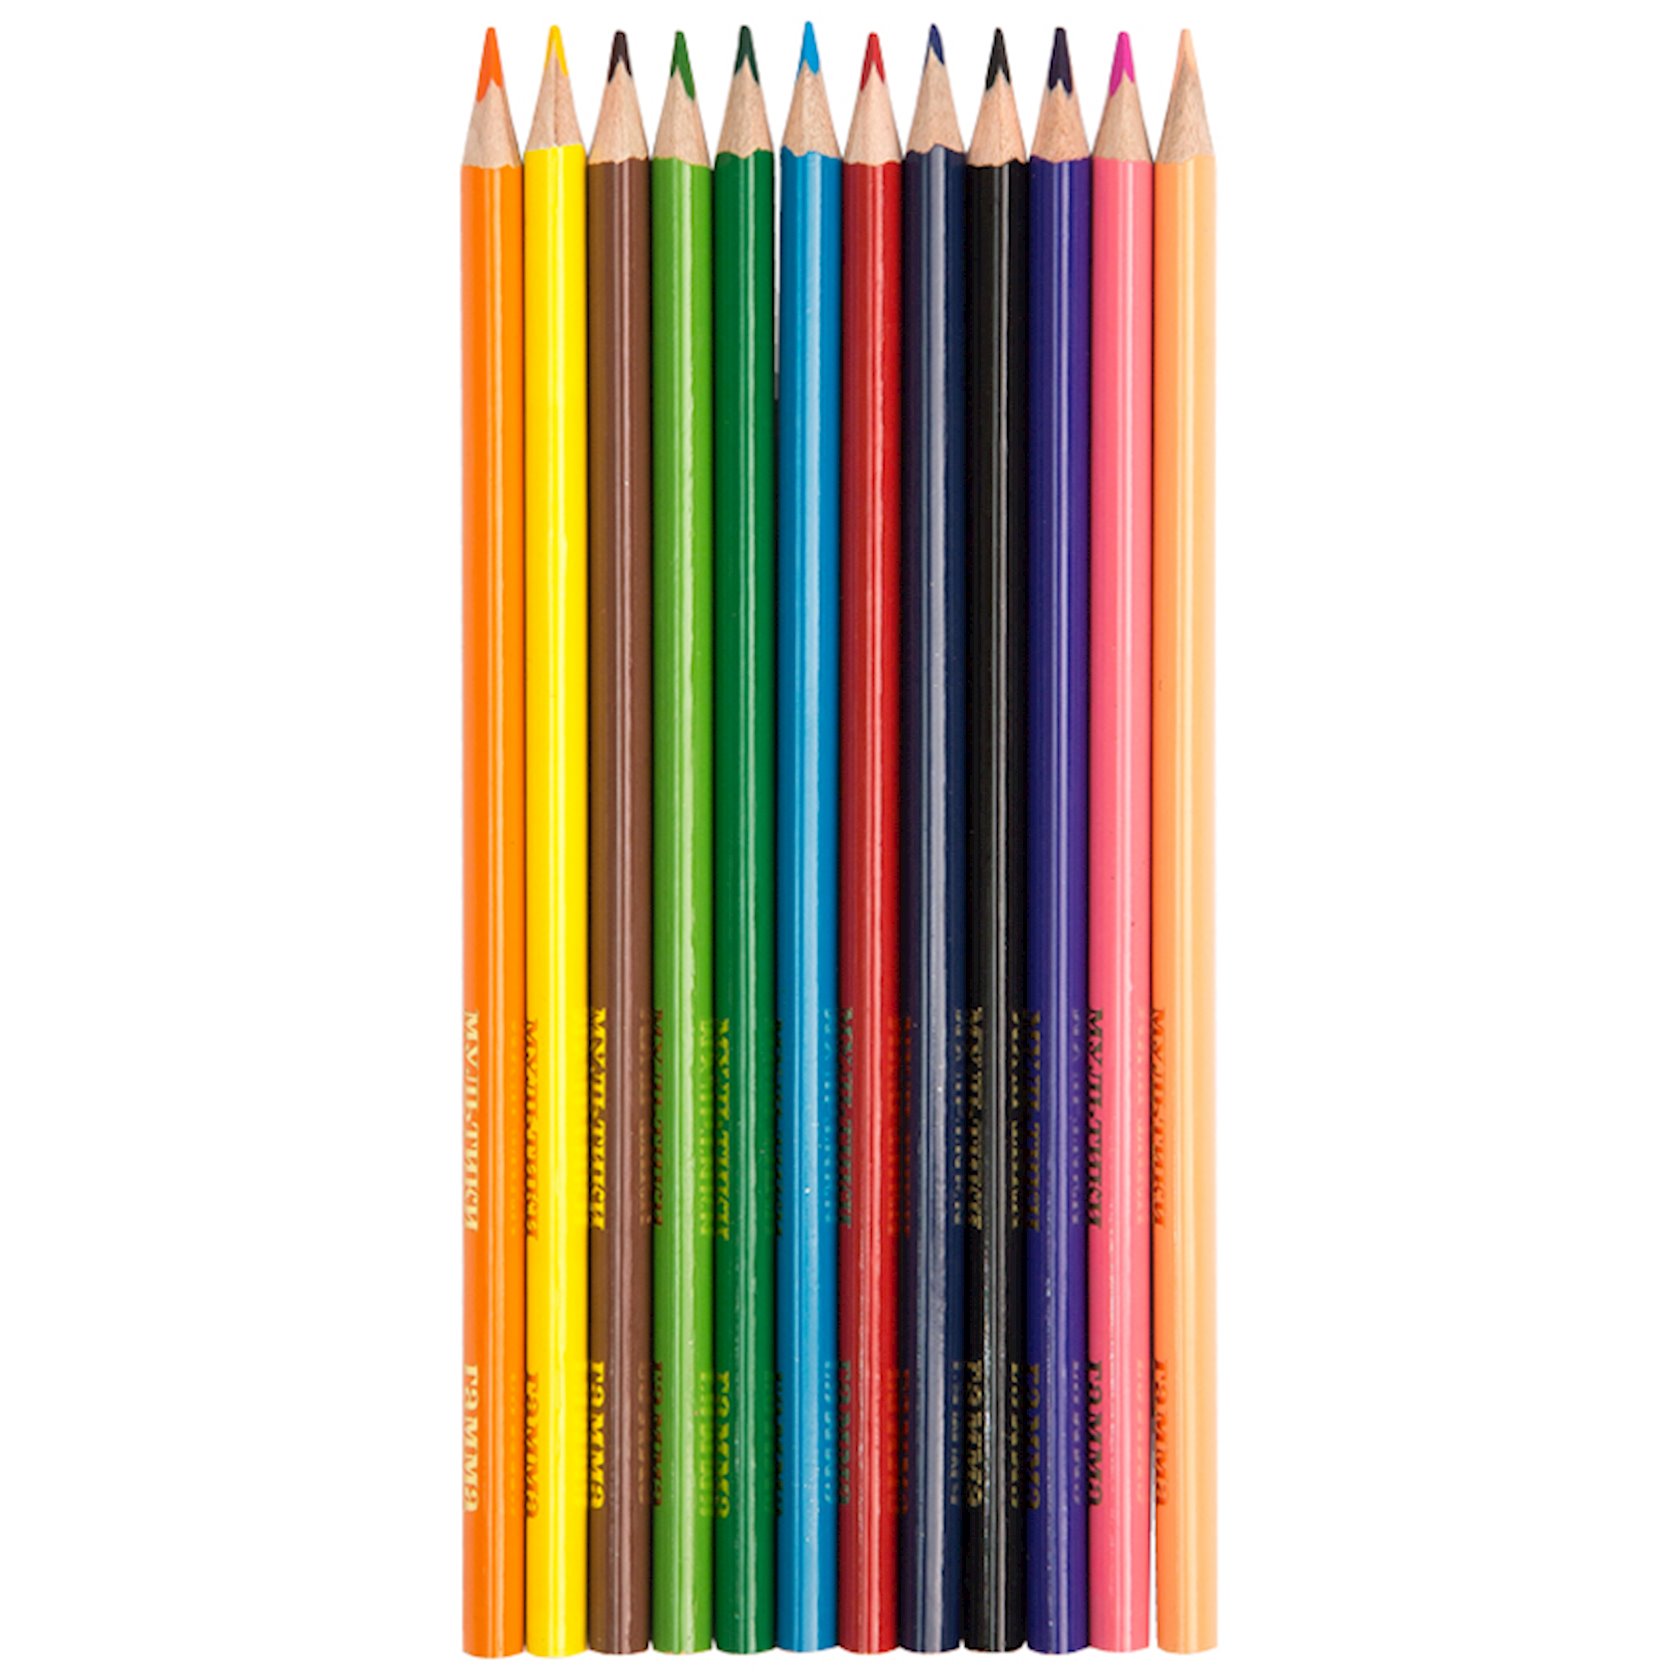  цветных карандашей Гамма,Мультики,трехгранные,12 шт -  в .